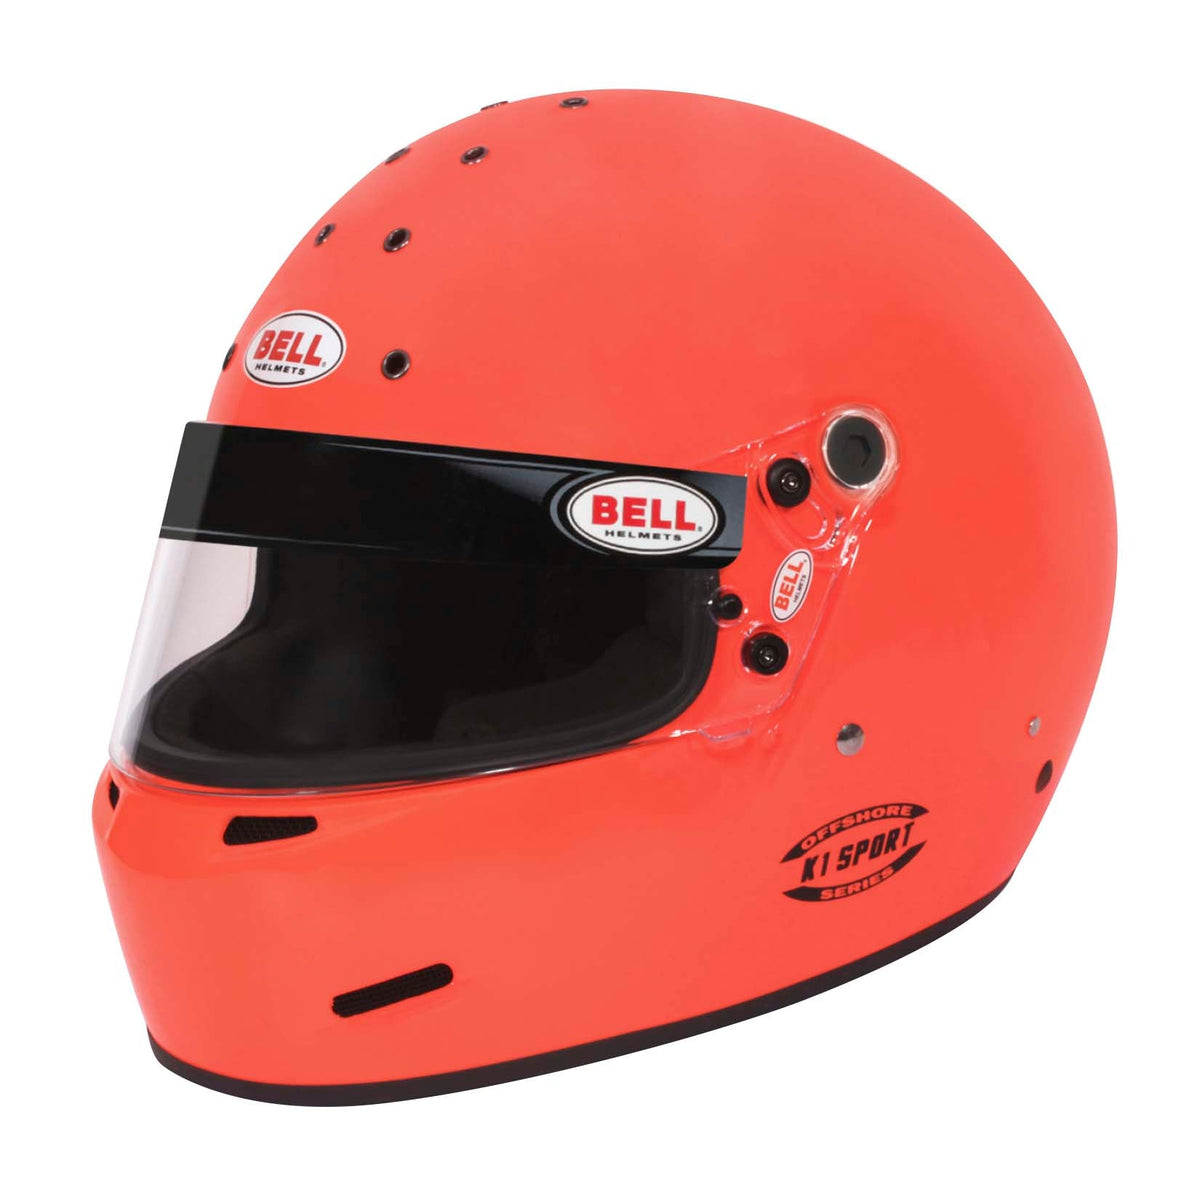 Bell K.1 Sport SA2020 Helmet Offshore Orange